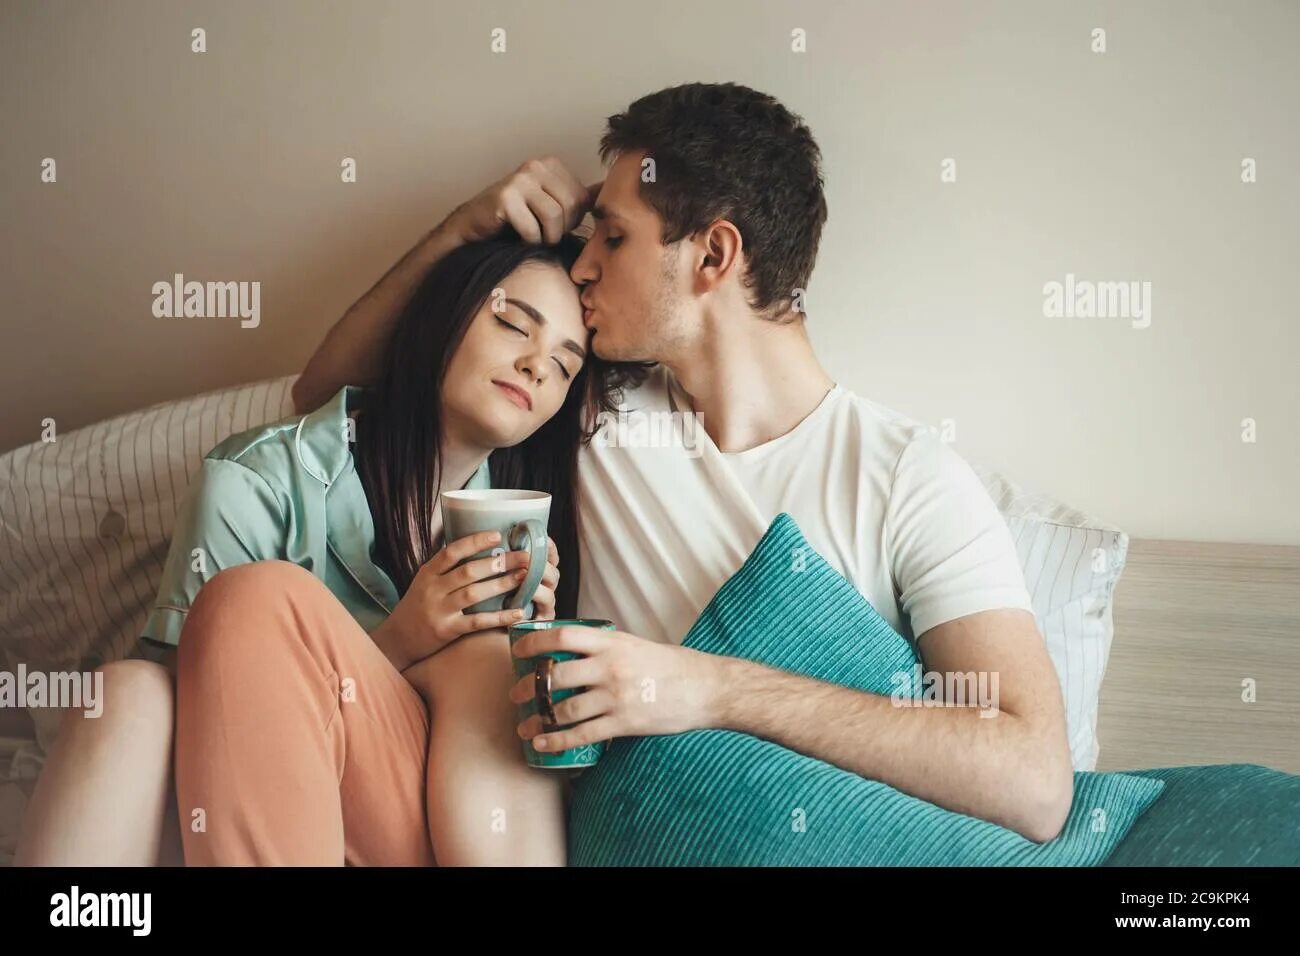 Постельное поцелую. Обнимаются пьют чай под одеялом. Люди целуются на кровати. Пить и обниматься. Обнимать и выпивать.